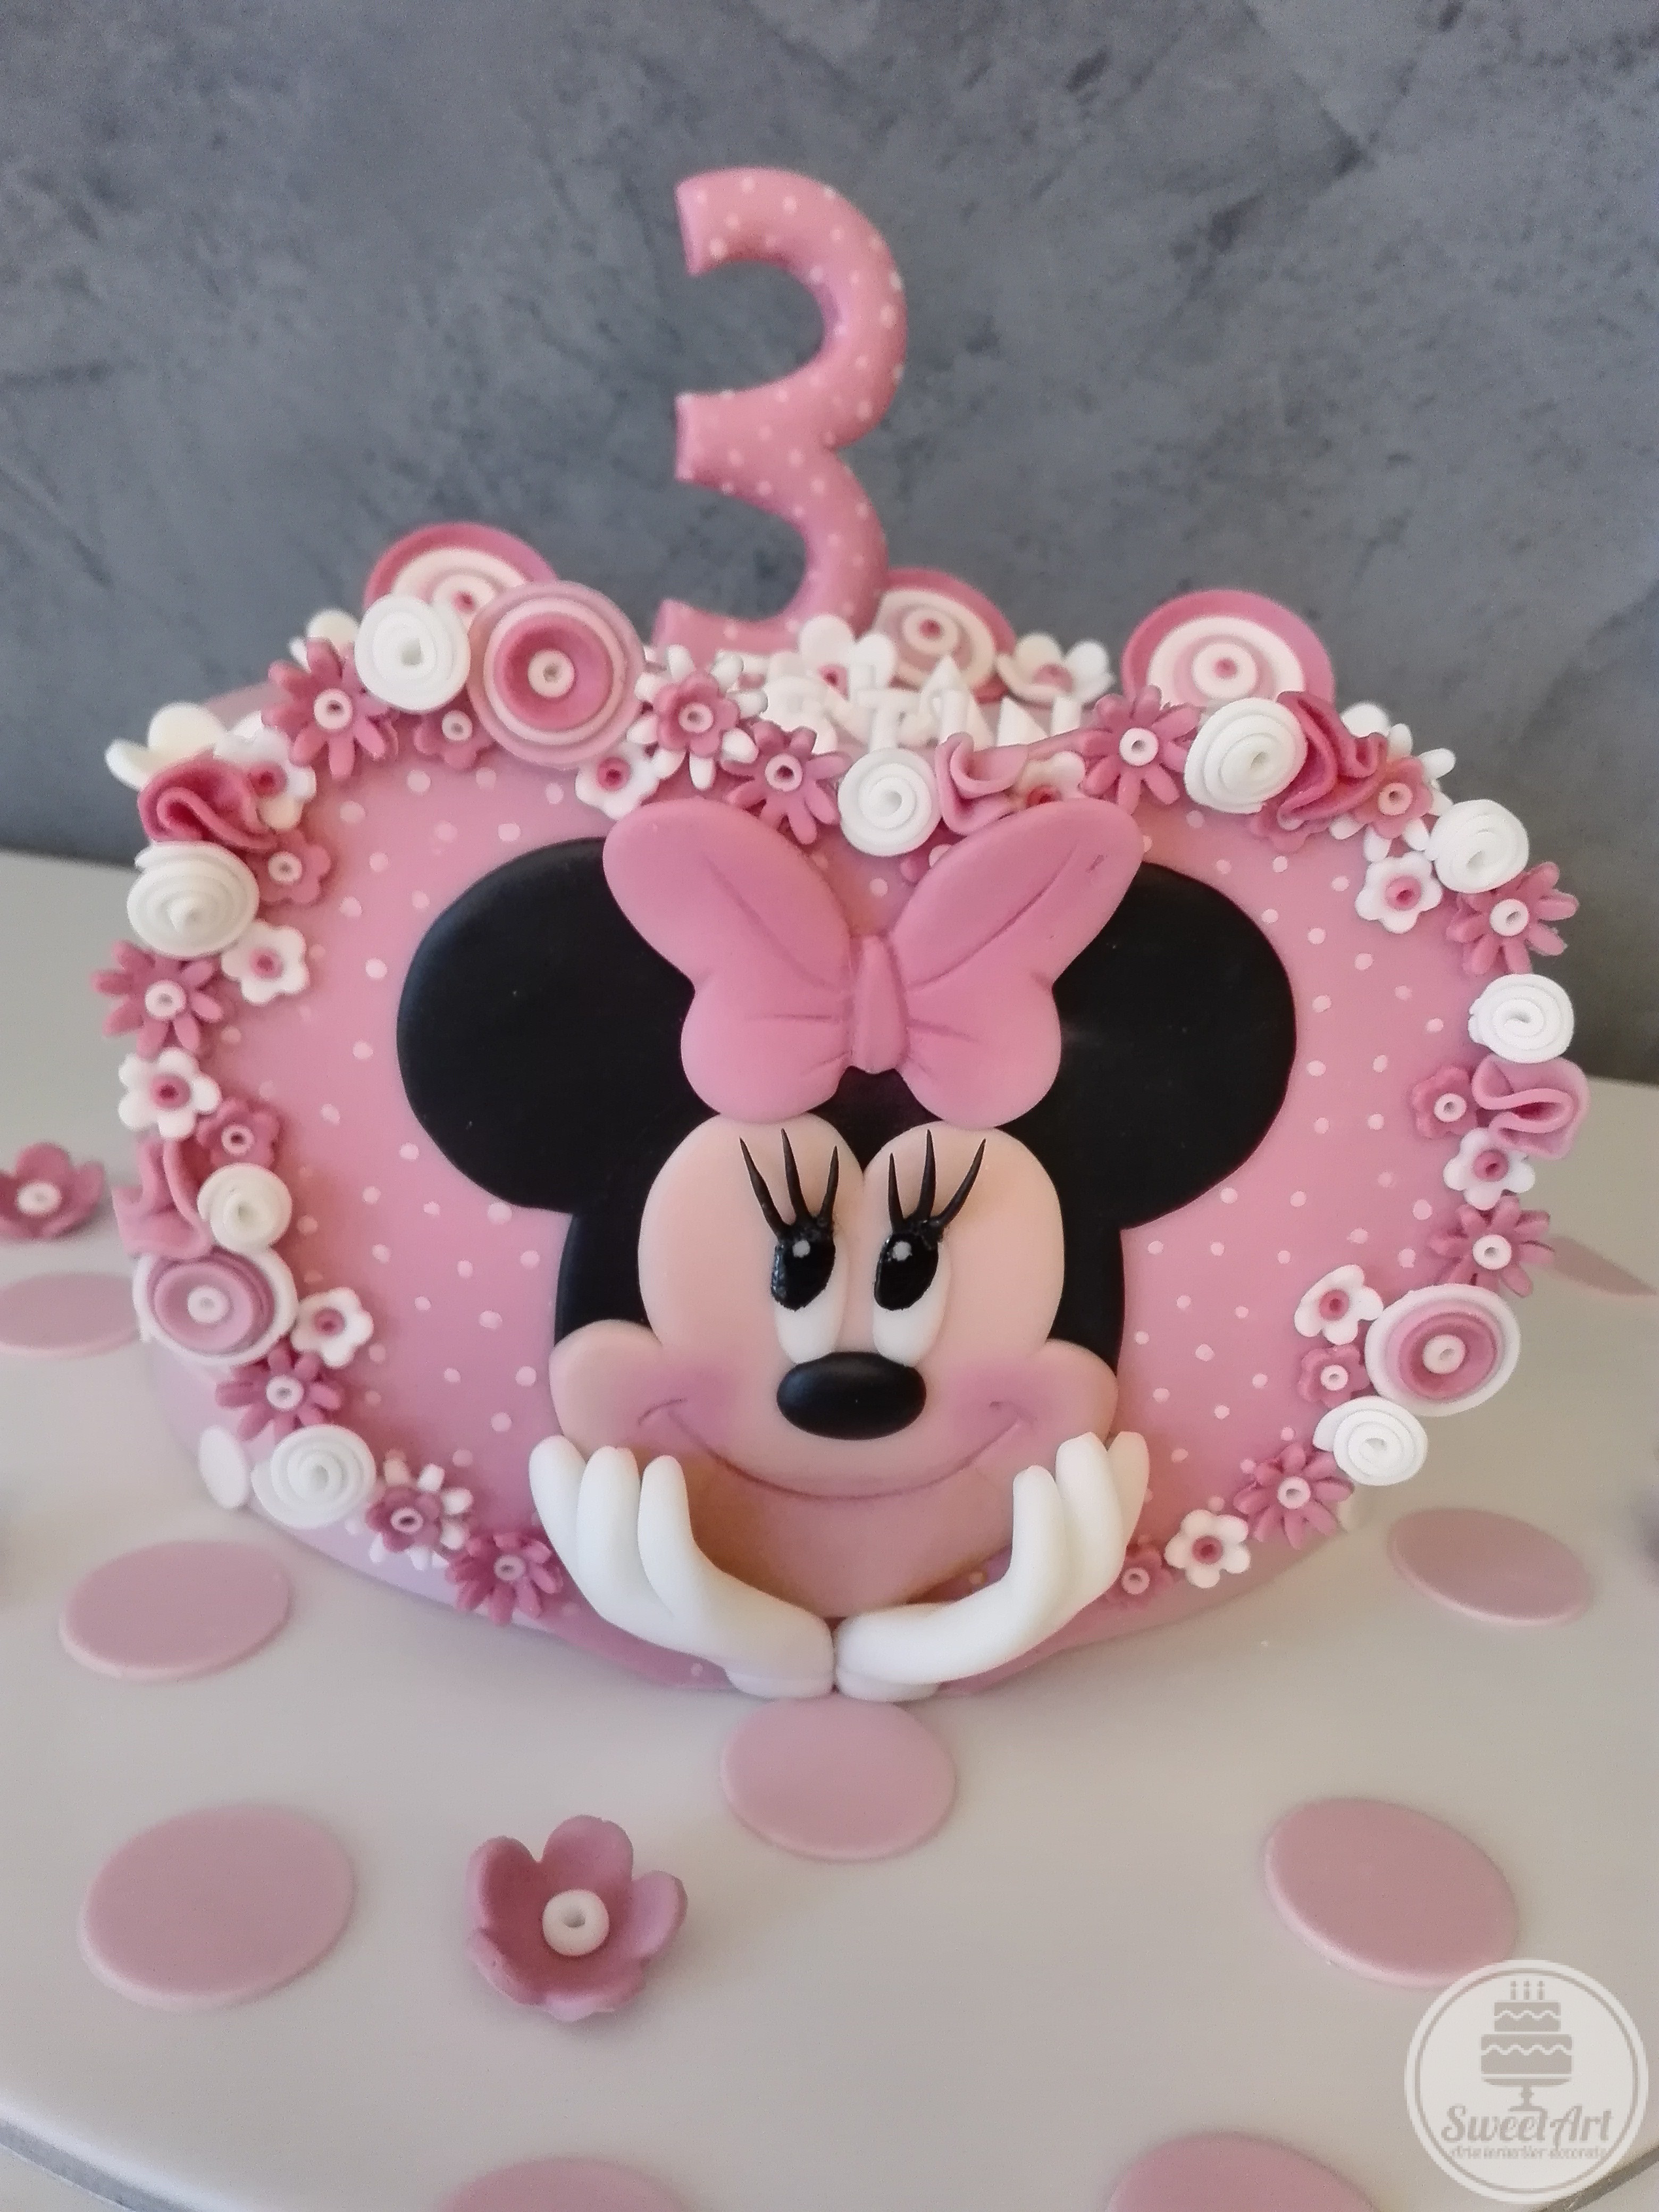 Tort inimă mare roz cu Șoricica Minnie – Minnie Mouse 2D, buline mici albe și multe, multe floricele albe și roz, tort alb cu buline roz și flori